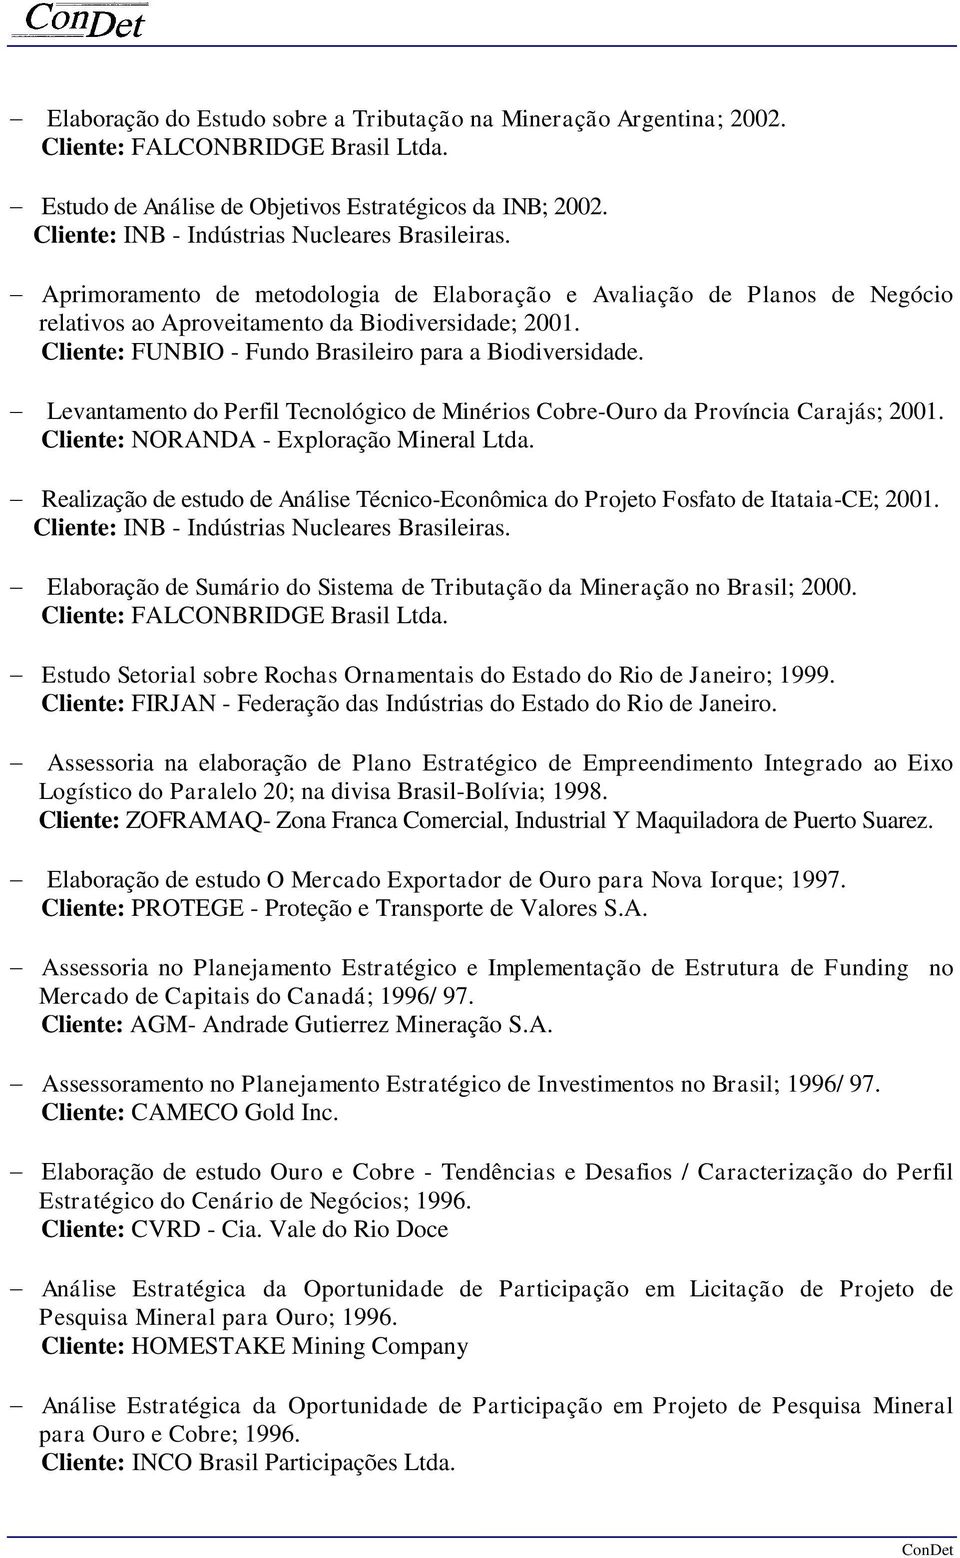 Cliente: FUNBIO - Fundo Brasileiro para a Biodiversidade. - Levantamento do Perfil Tecnológico de Minérios Cobre-Ouro da Província Carajás; 2001. Cliente: NORANDA - Exploração Mineral Ltda.